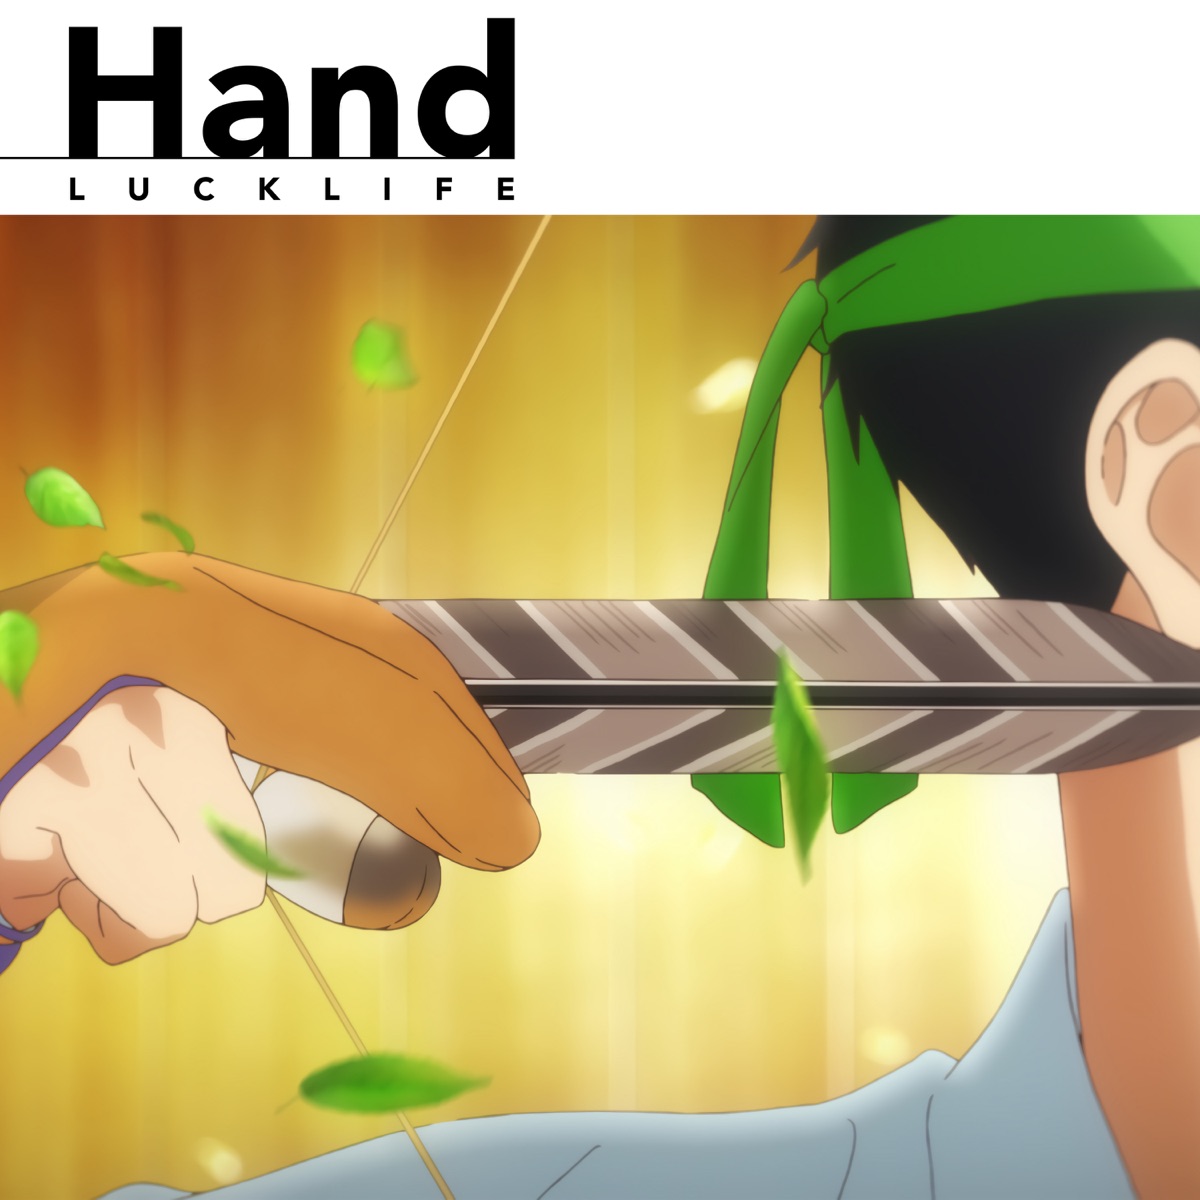 『ラックライフ - Hand』収録の『Hand』ジャケット